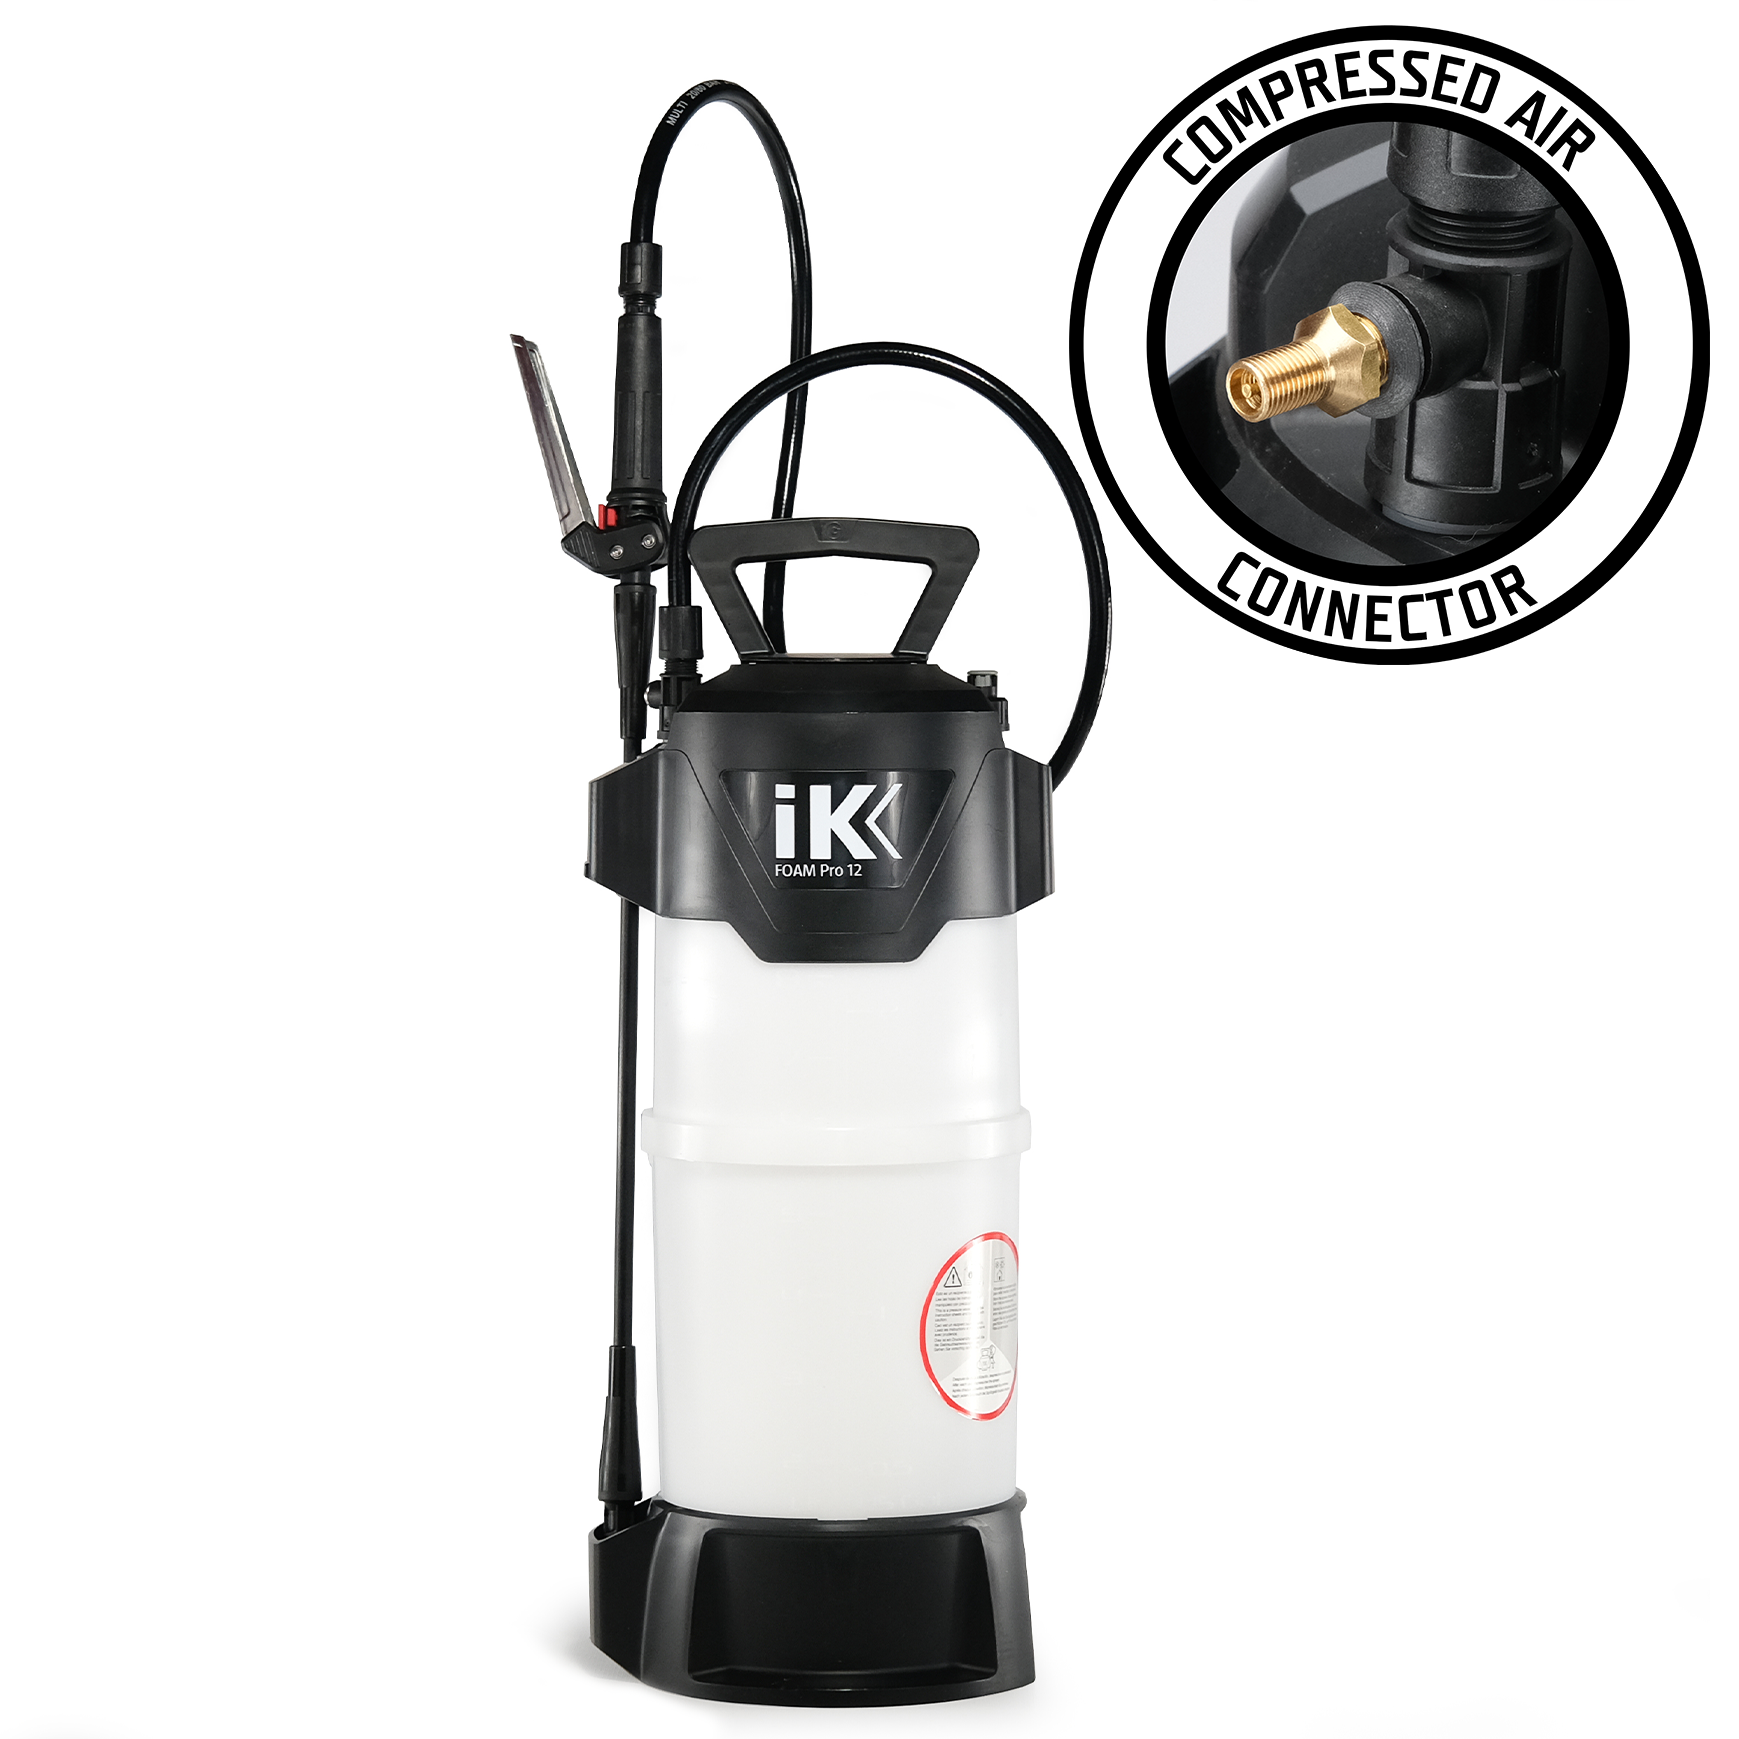 IK 12 Foam Pro Sprayer by Frasers Aerospace